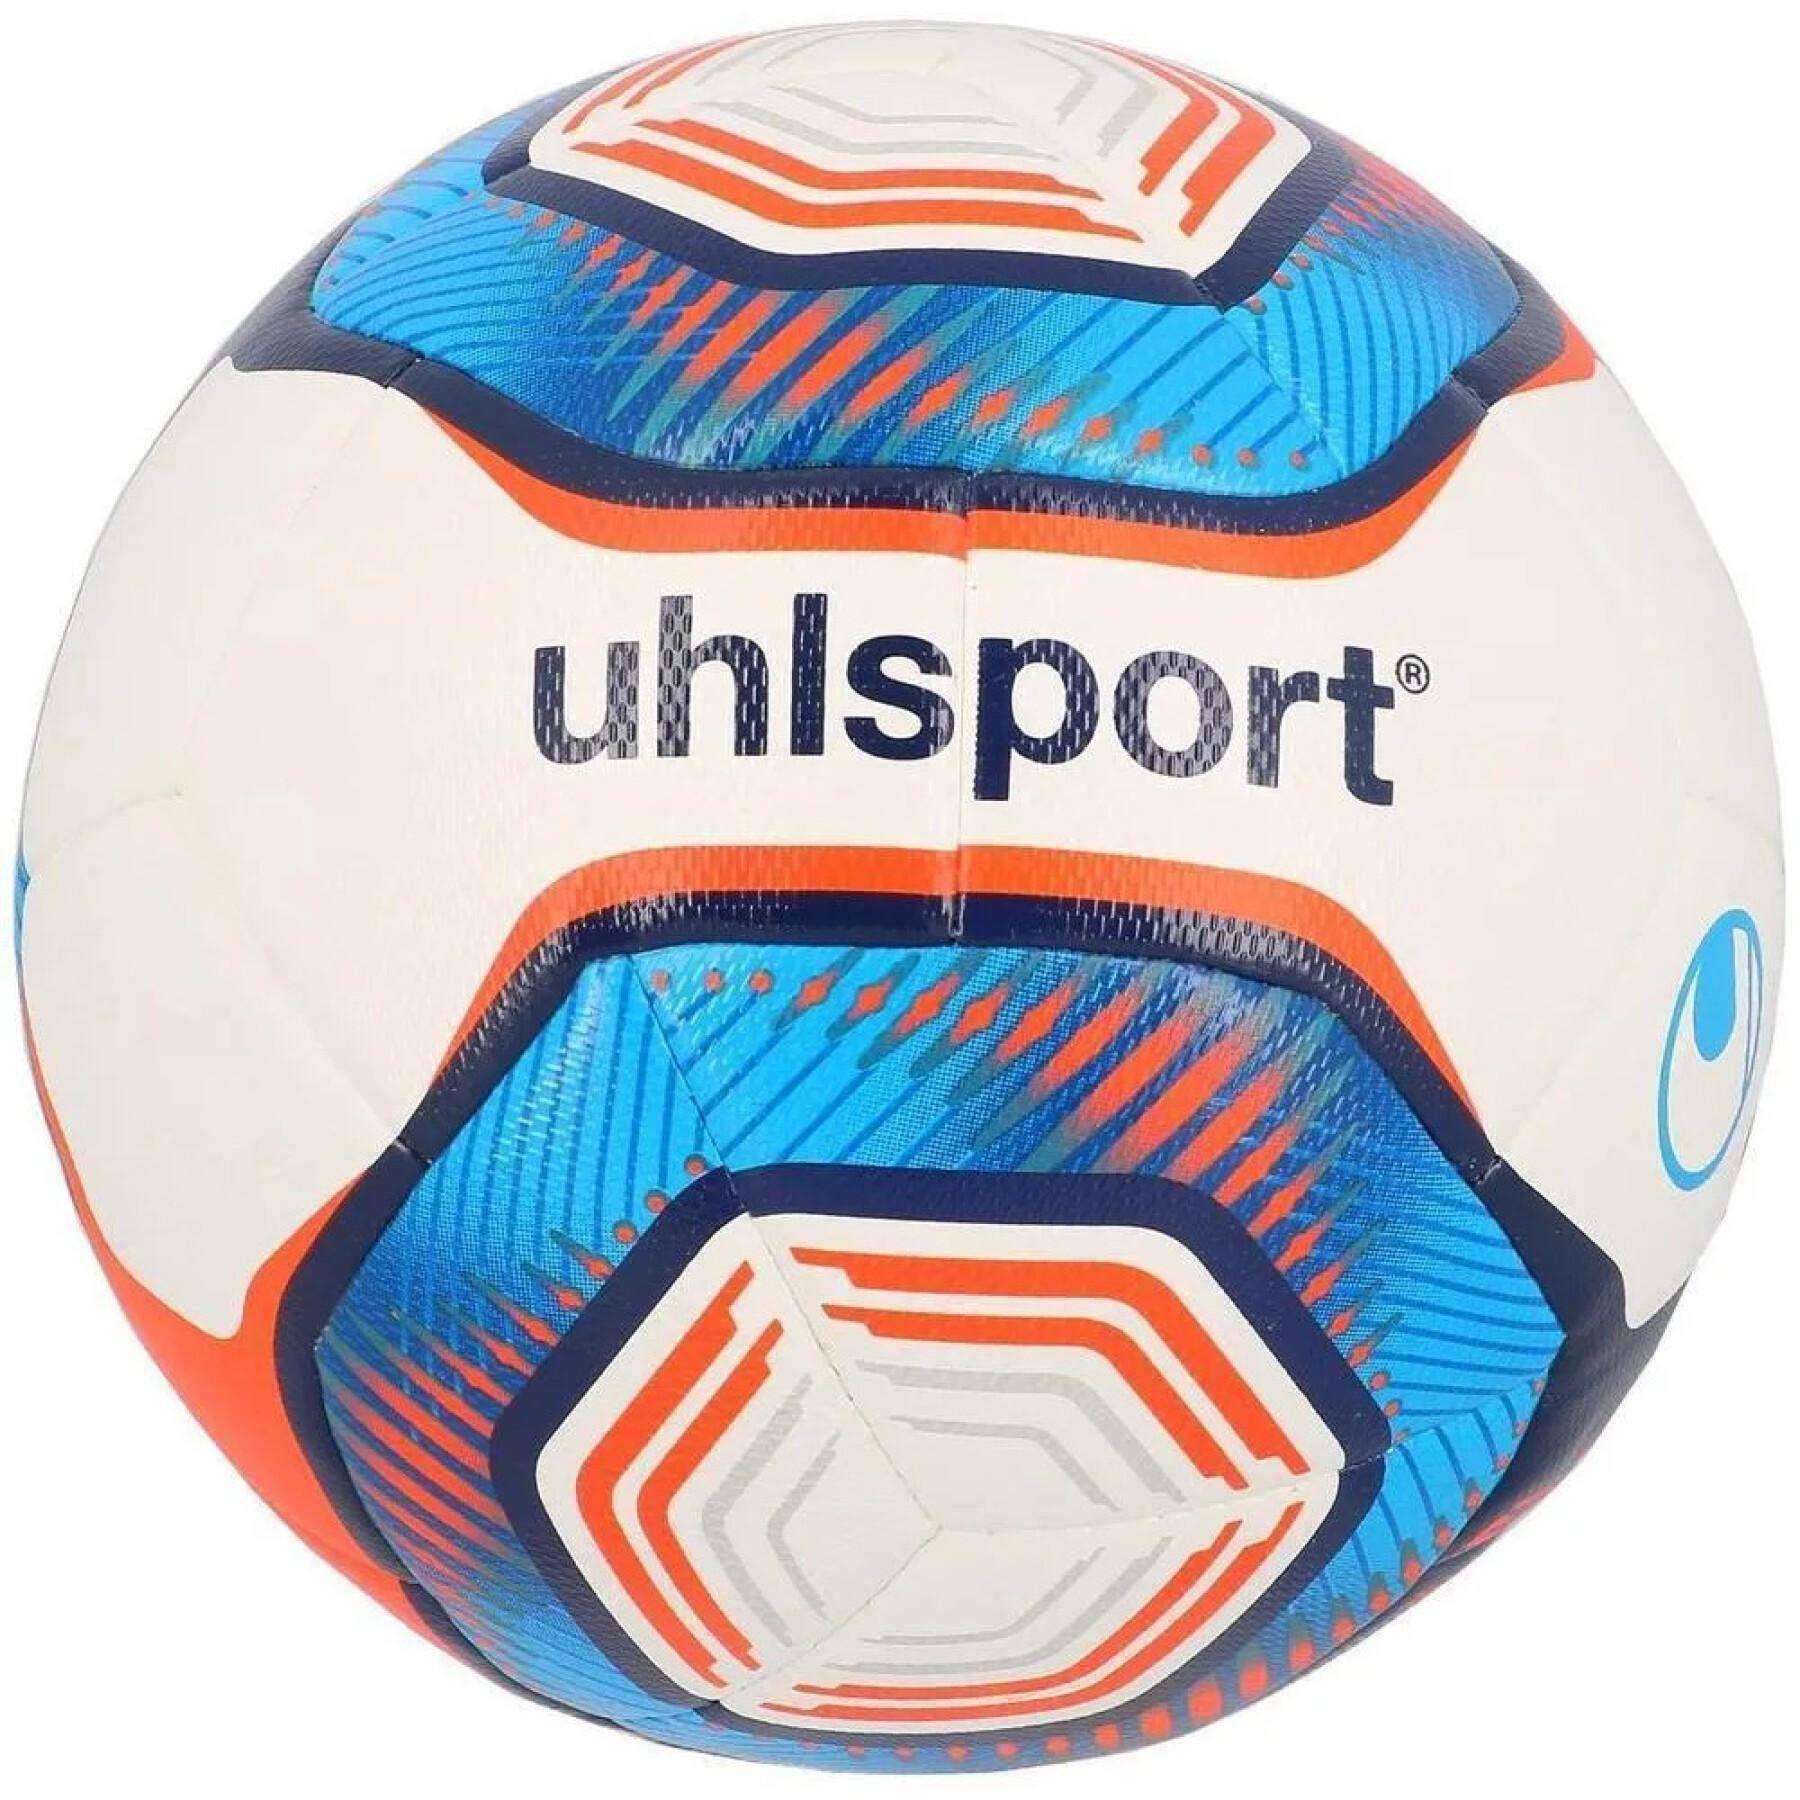 Balão Uhlsport Elysia Pro Training 2.0